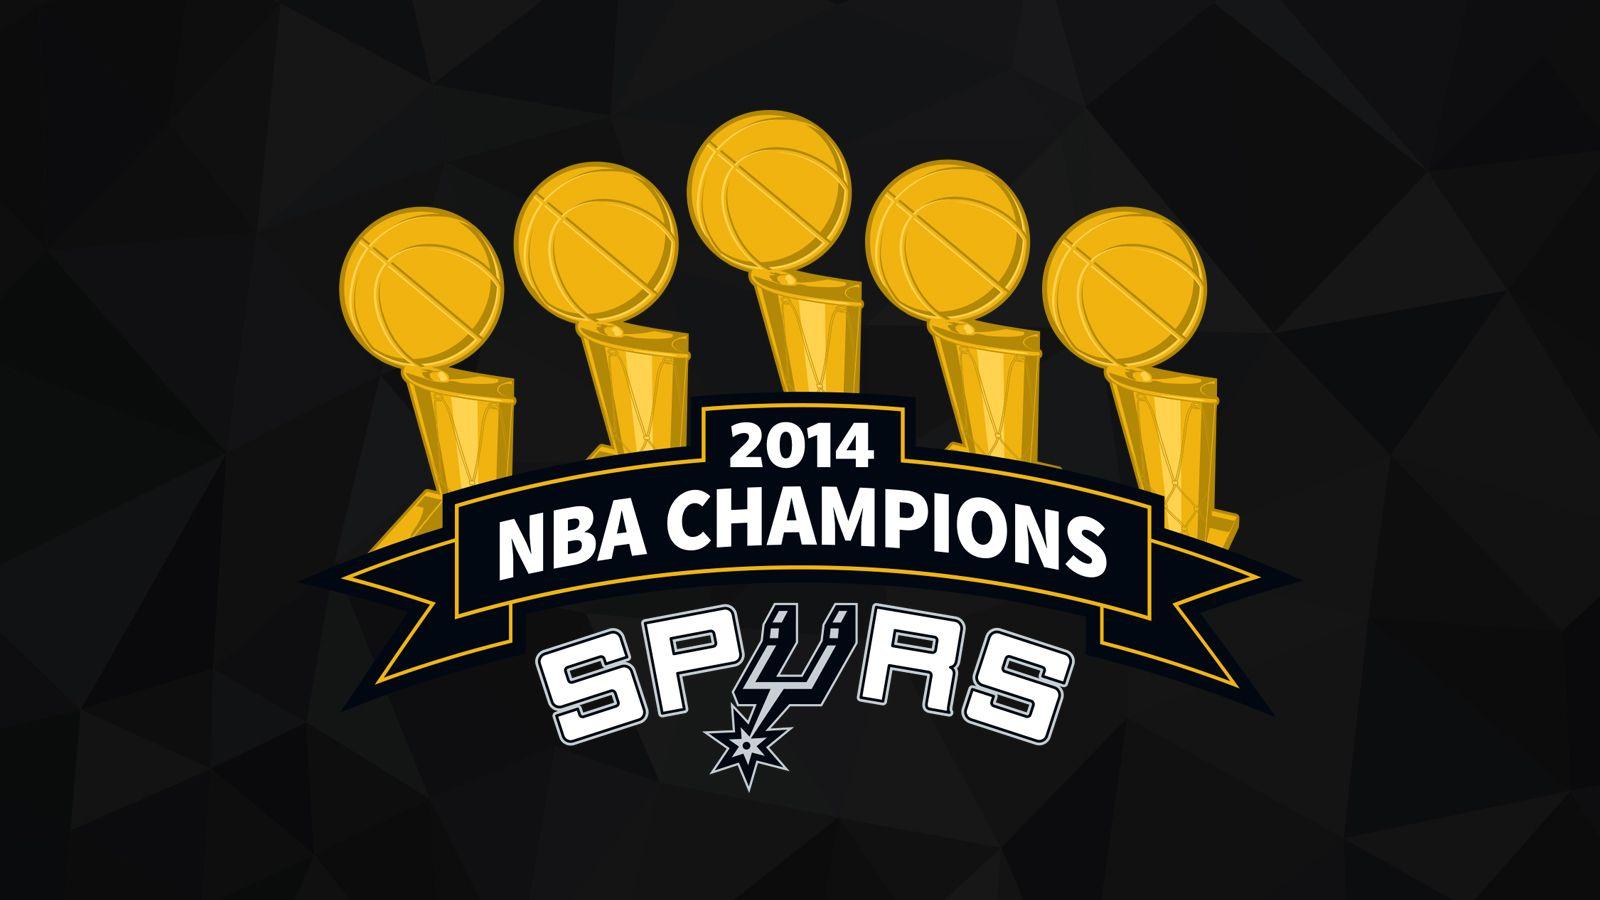 V.629: Spurs Wallpaper, HD Image of Spurs, Ultra HD 4K Spurs